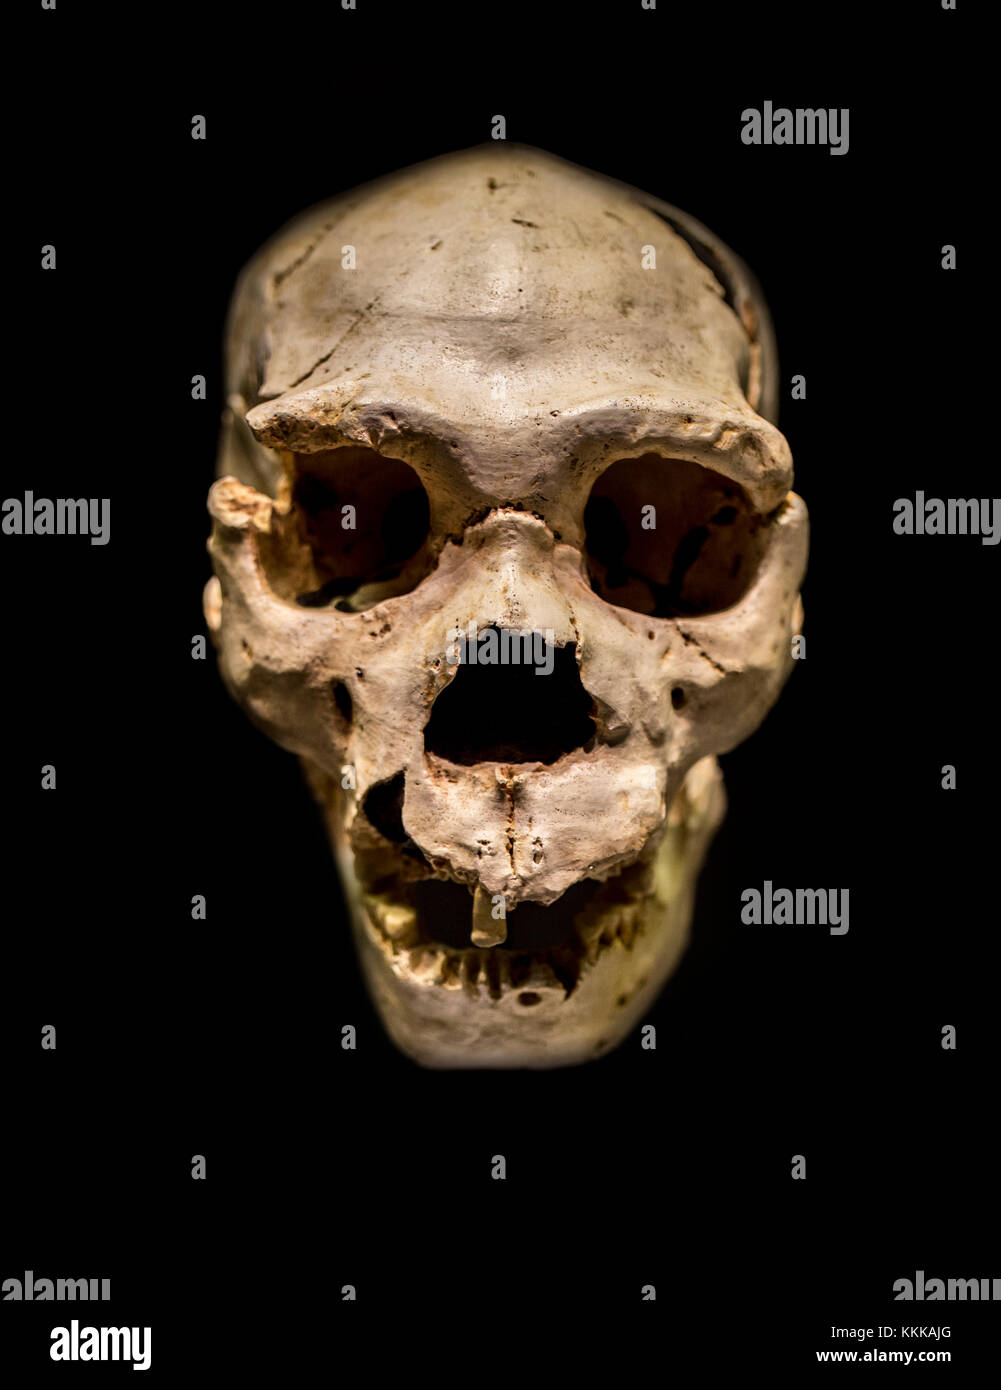 Miguelon, Spitzname für die vollständigsten Schädel eines Homo heidelbergensis überhaupt gefunden. Bei Atapuerta Sima de los Huesos, Burgos, Spanien gefunden Stockfoto